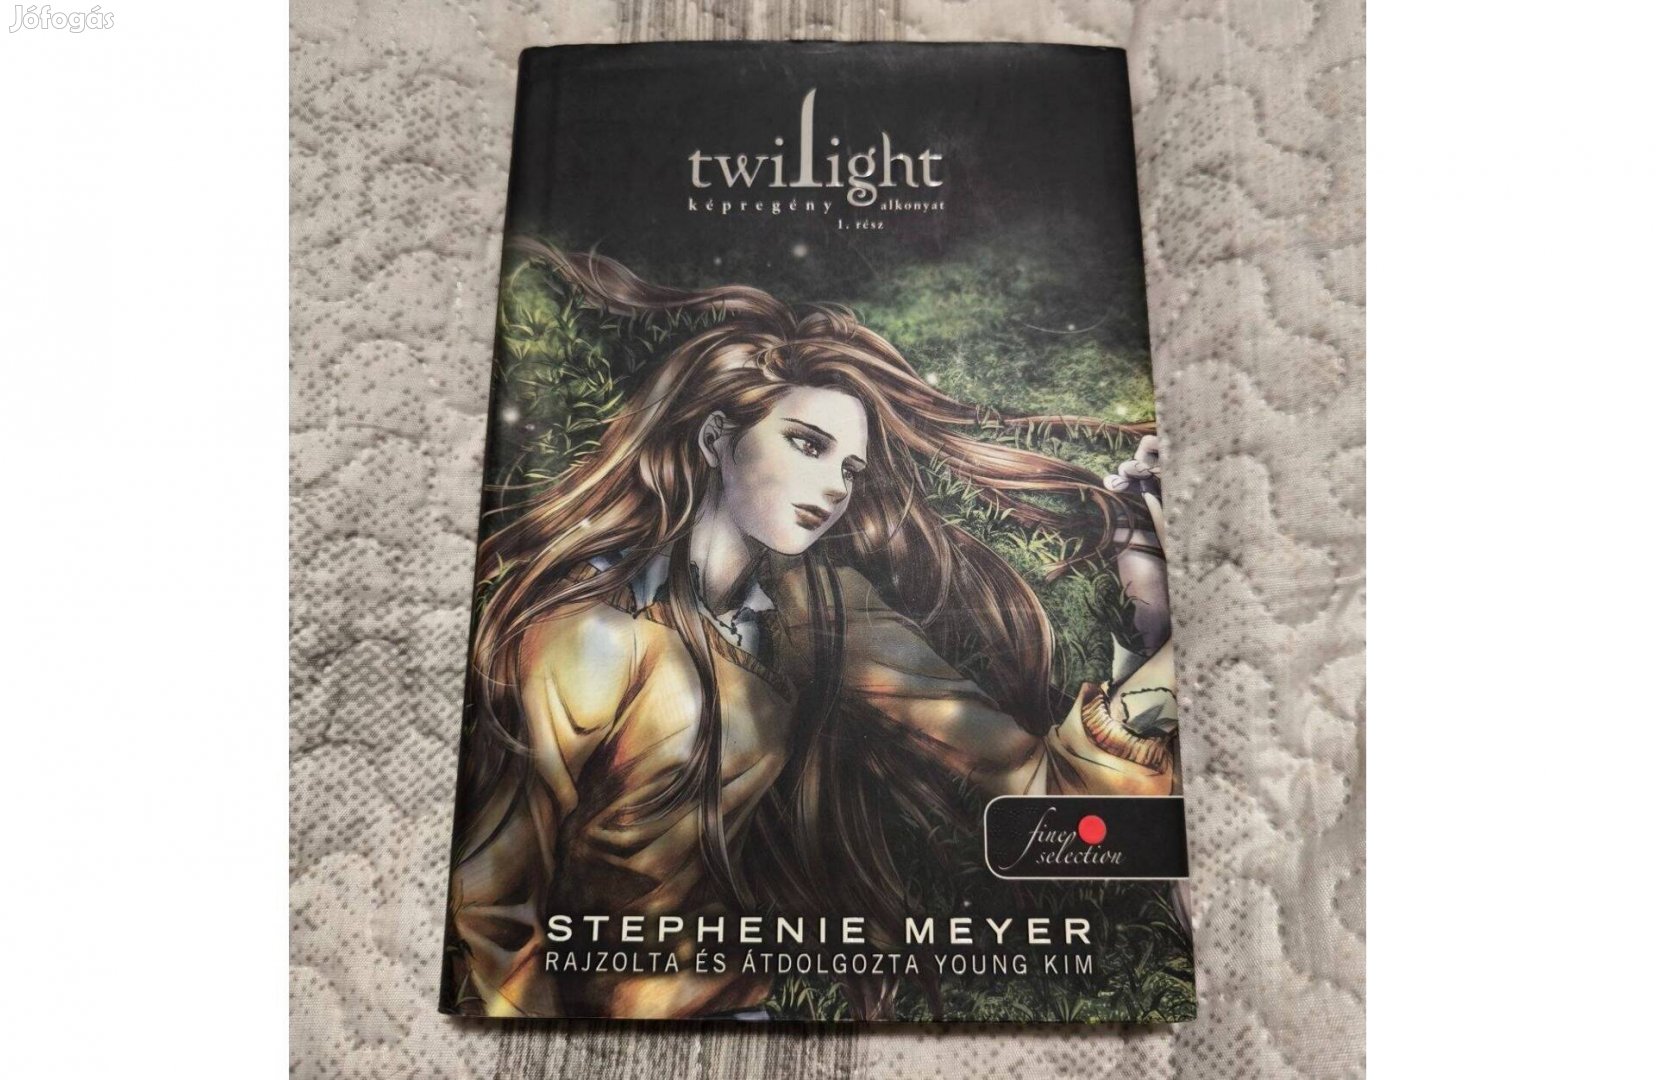 Twilight képregény - Alkonyat c. sorozat 1